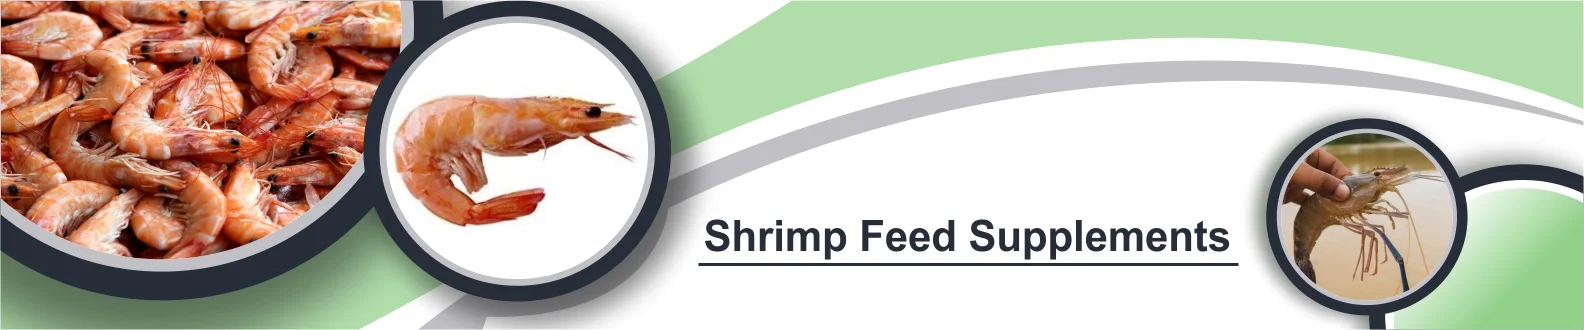 shrimp-banner-image